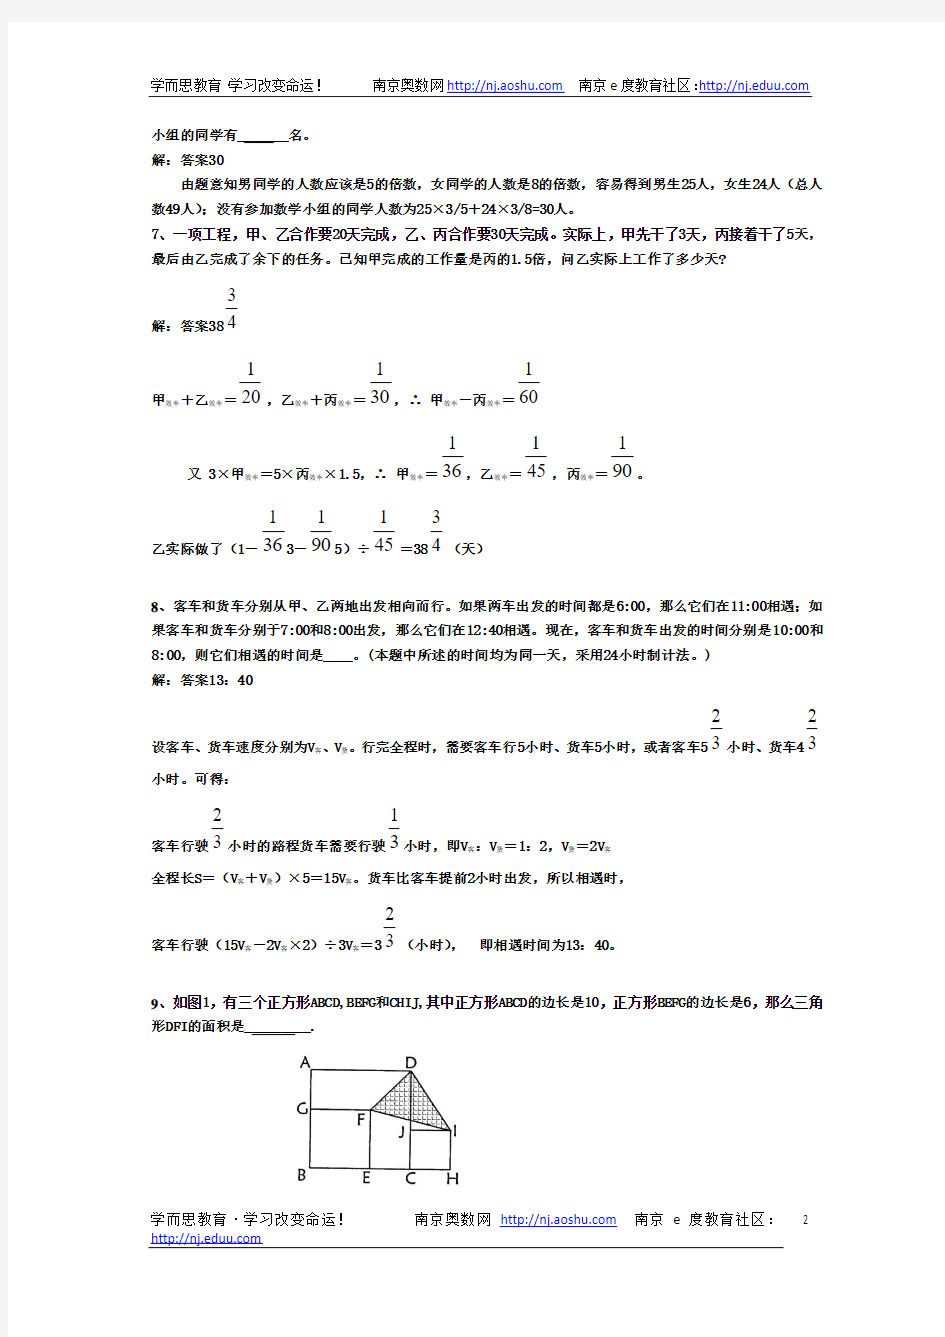 2011年小升初数学分班考试题及答案详解(二)(1)